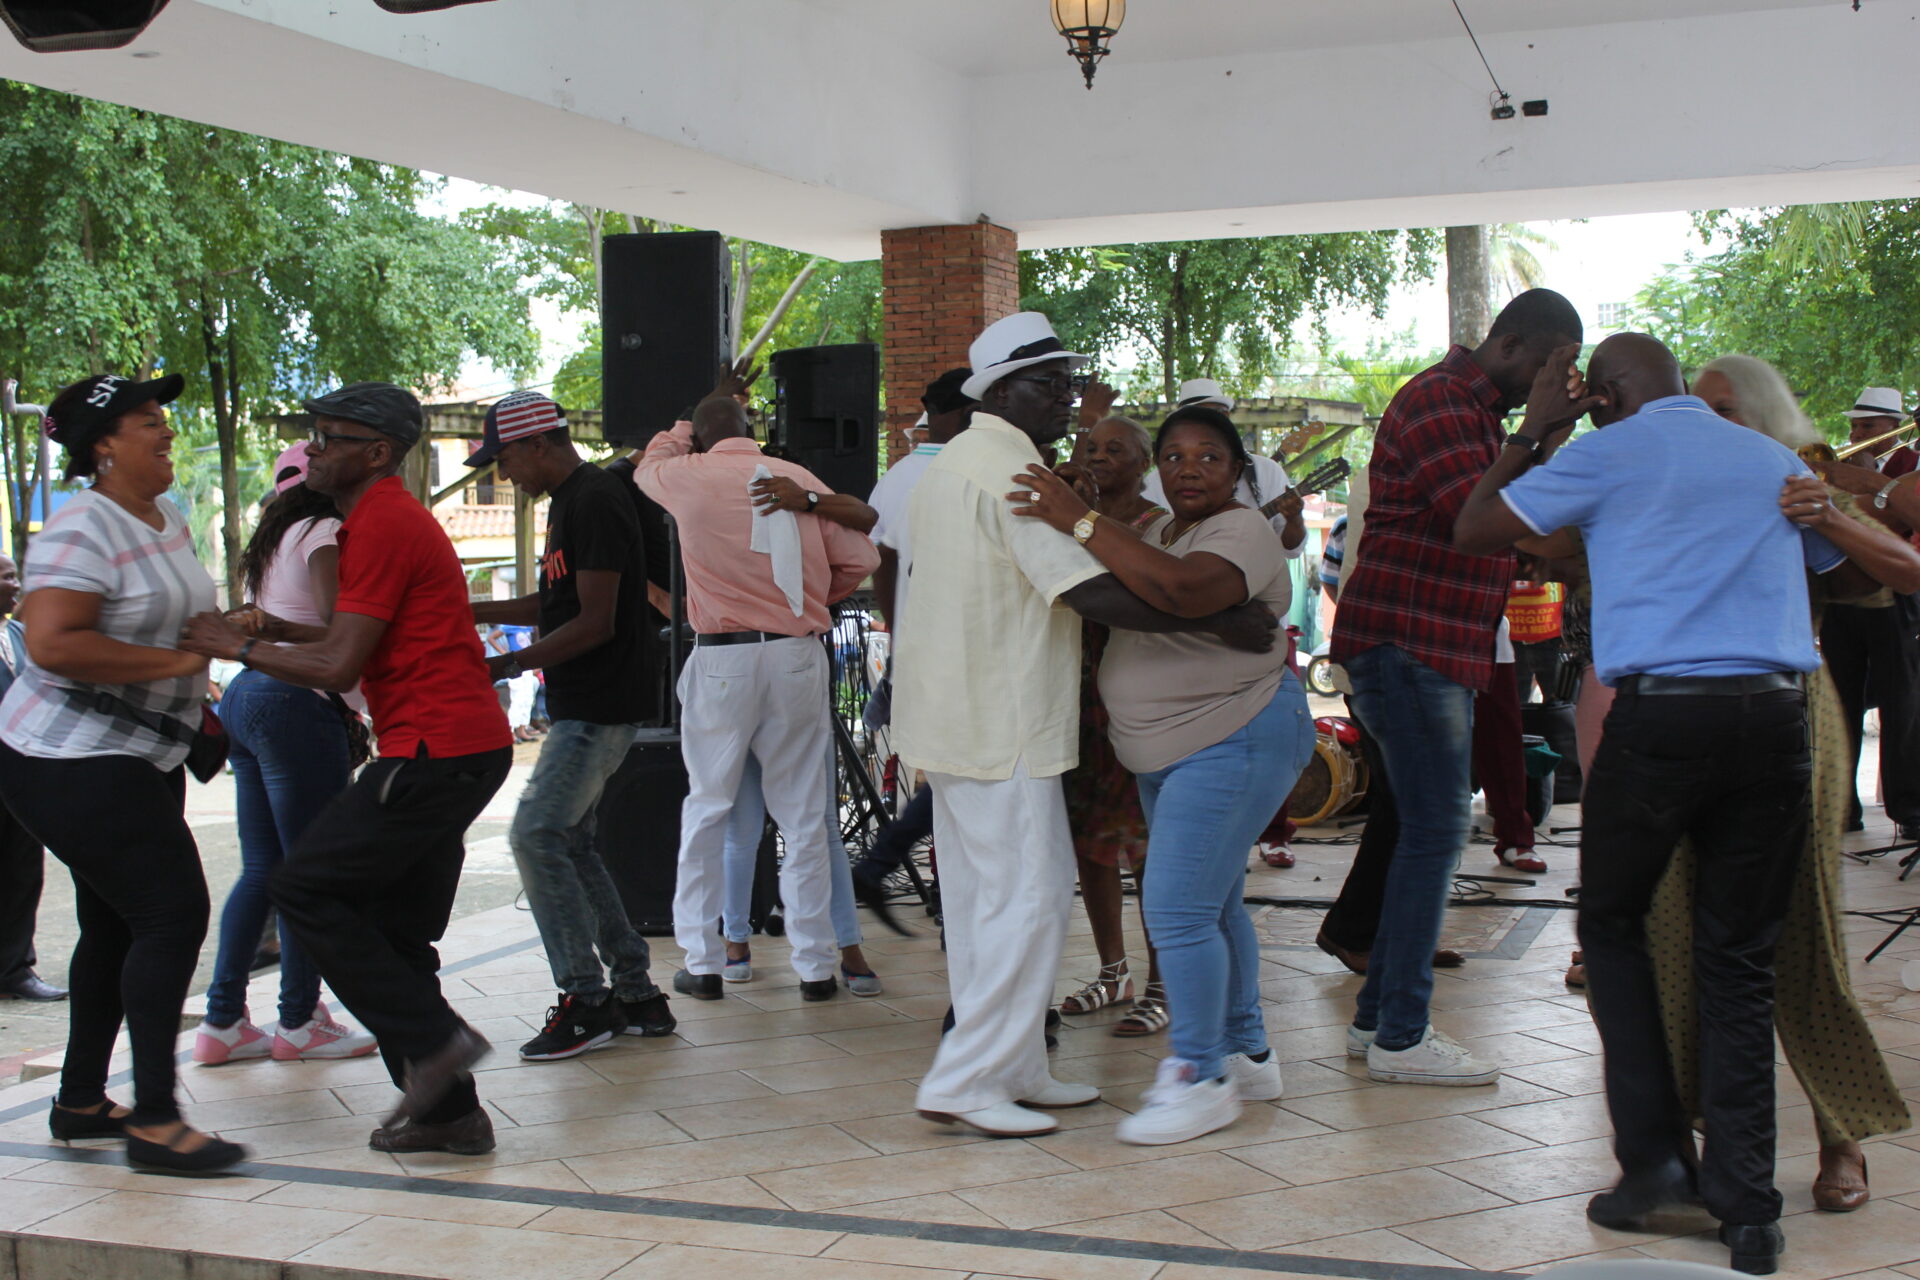 A ritmo de “Son” Los Hermanos Heredia ponen a bailar a Villa Mella